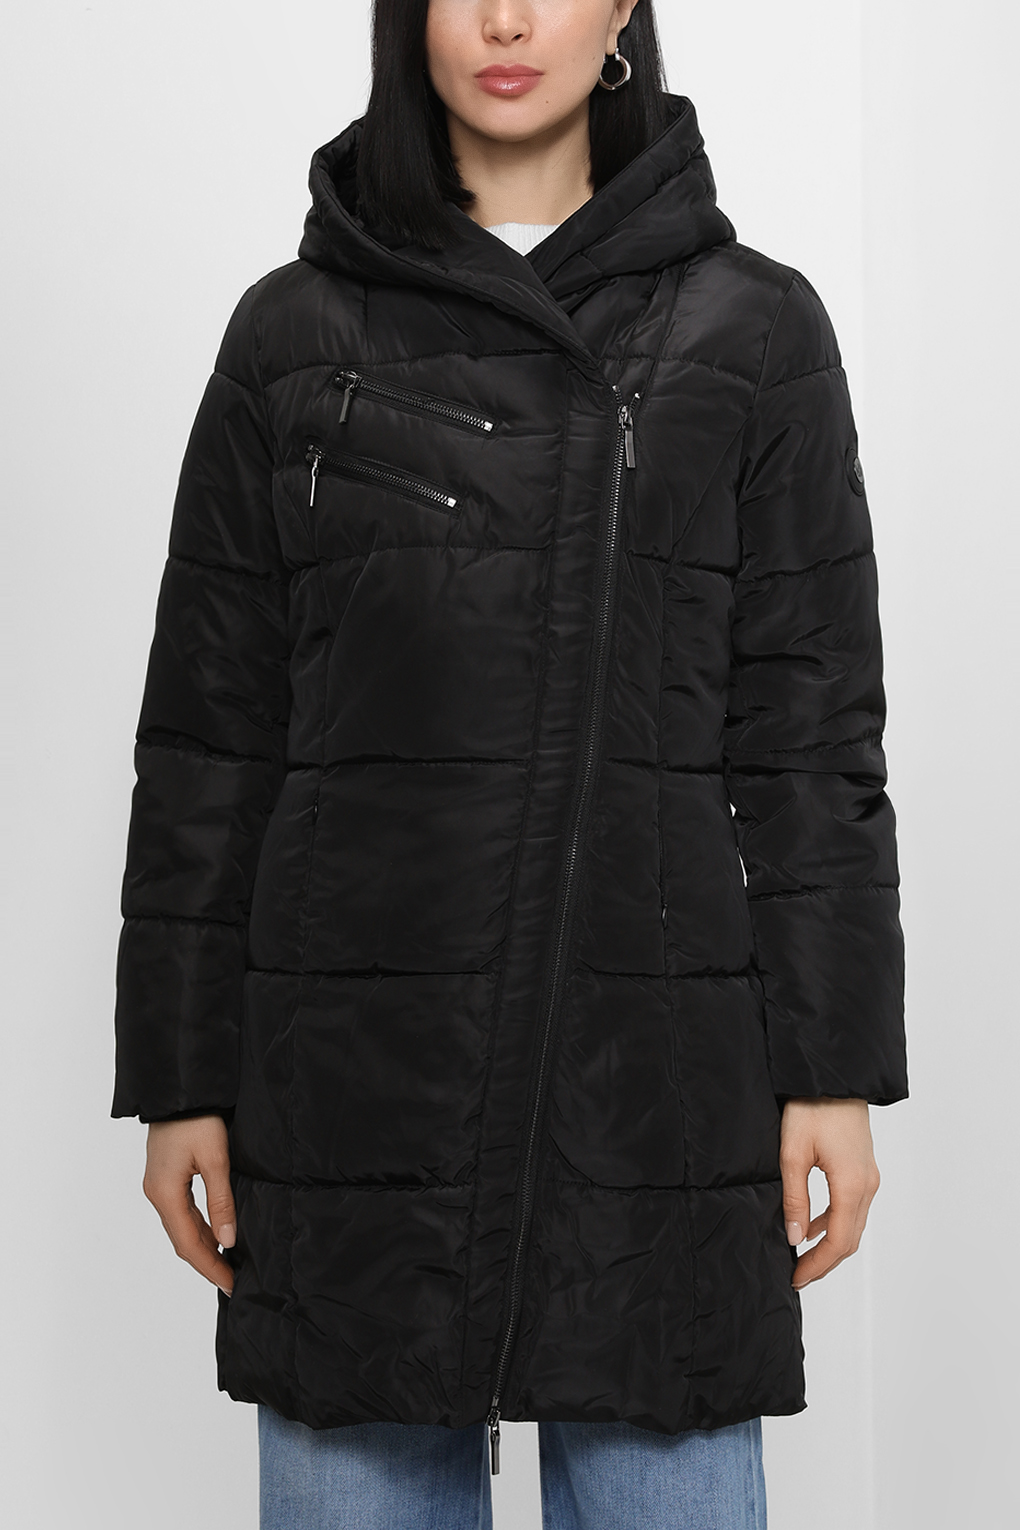 Куртка женская Loft LF2030285 черная M